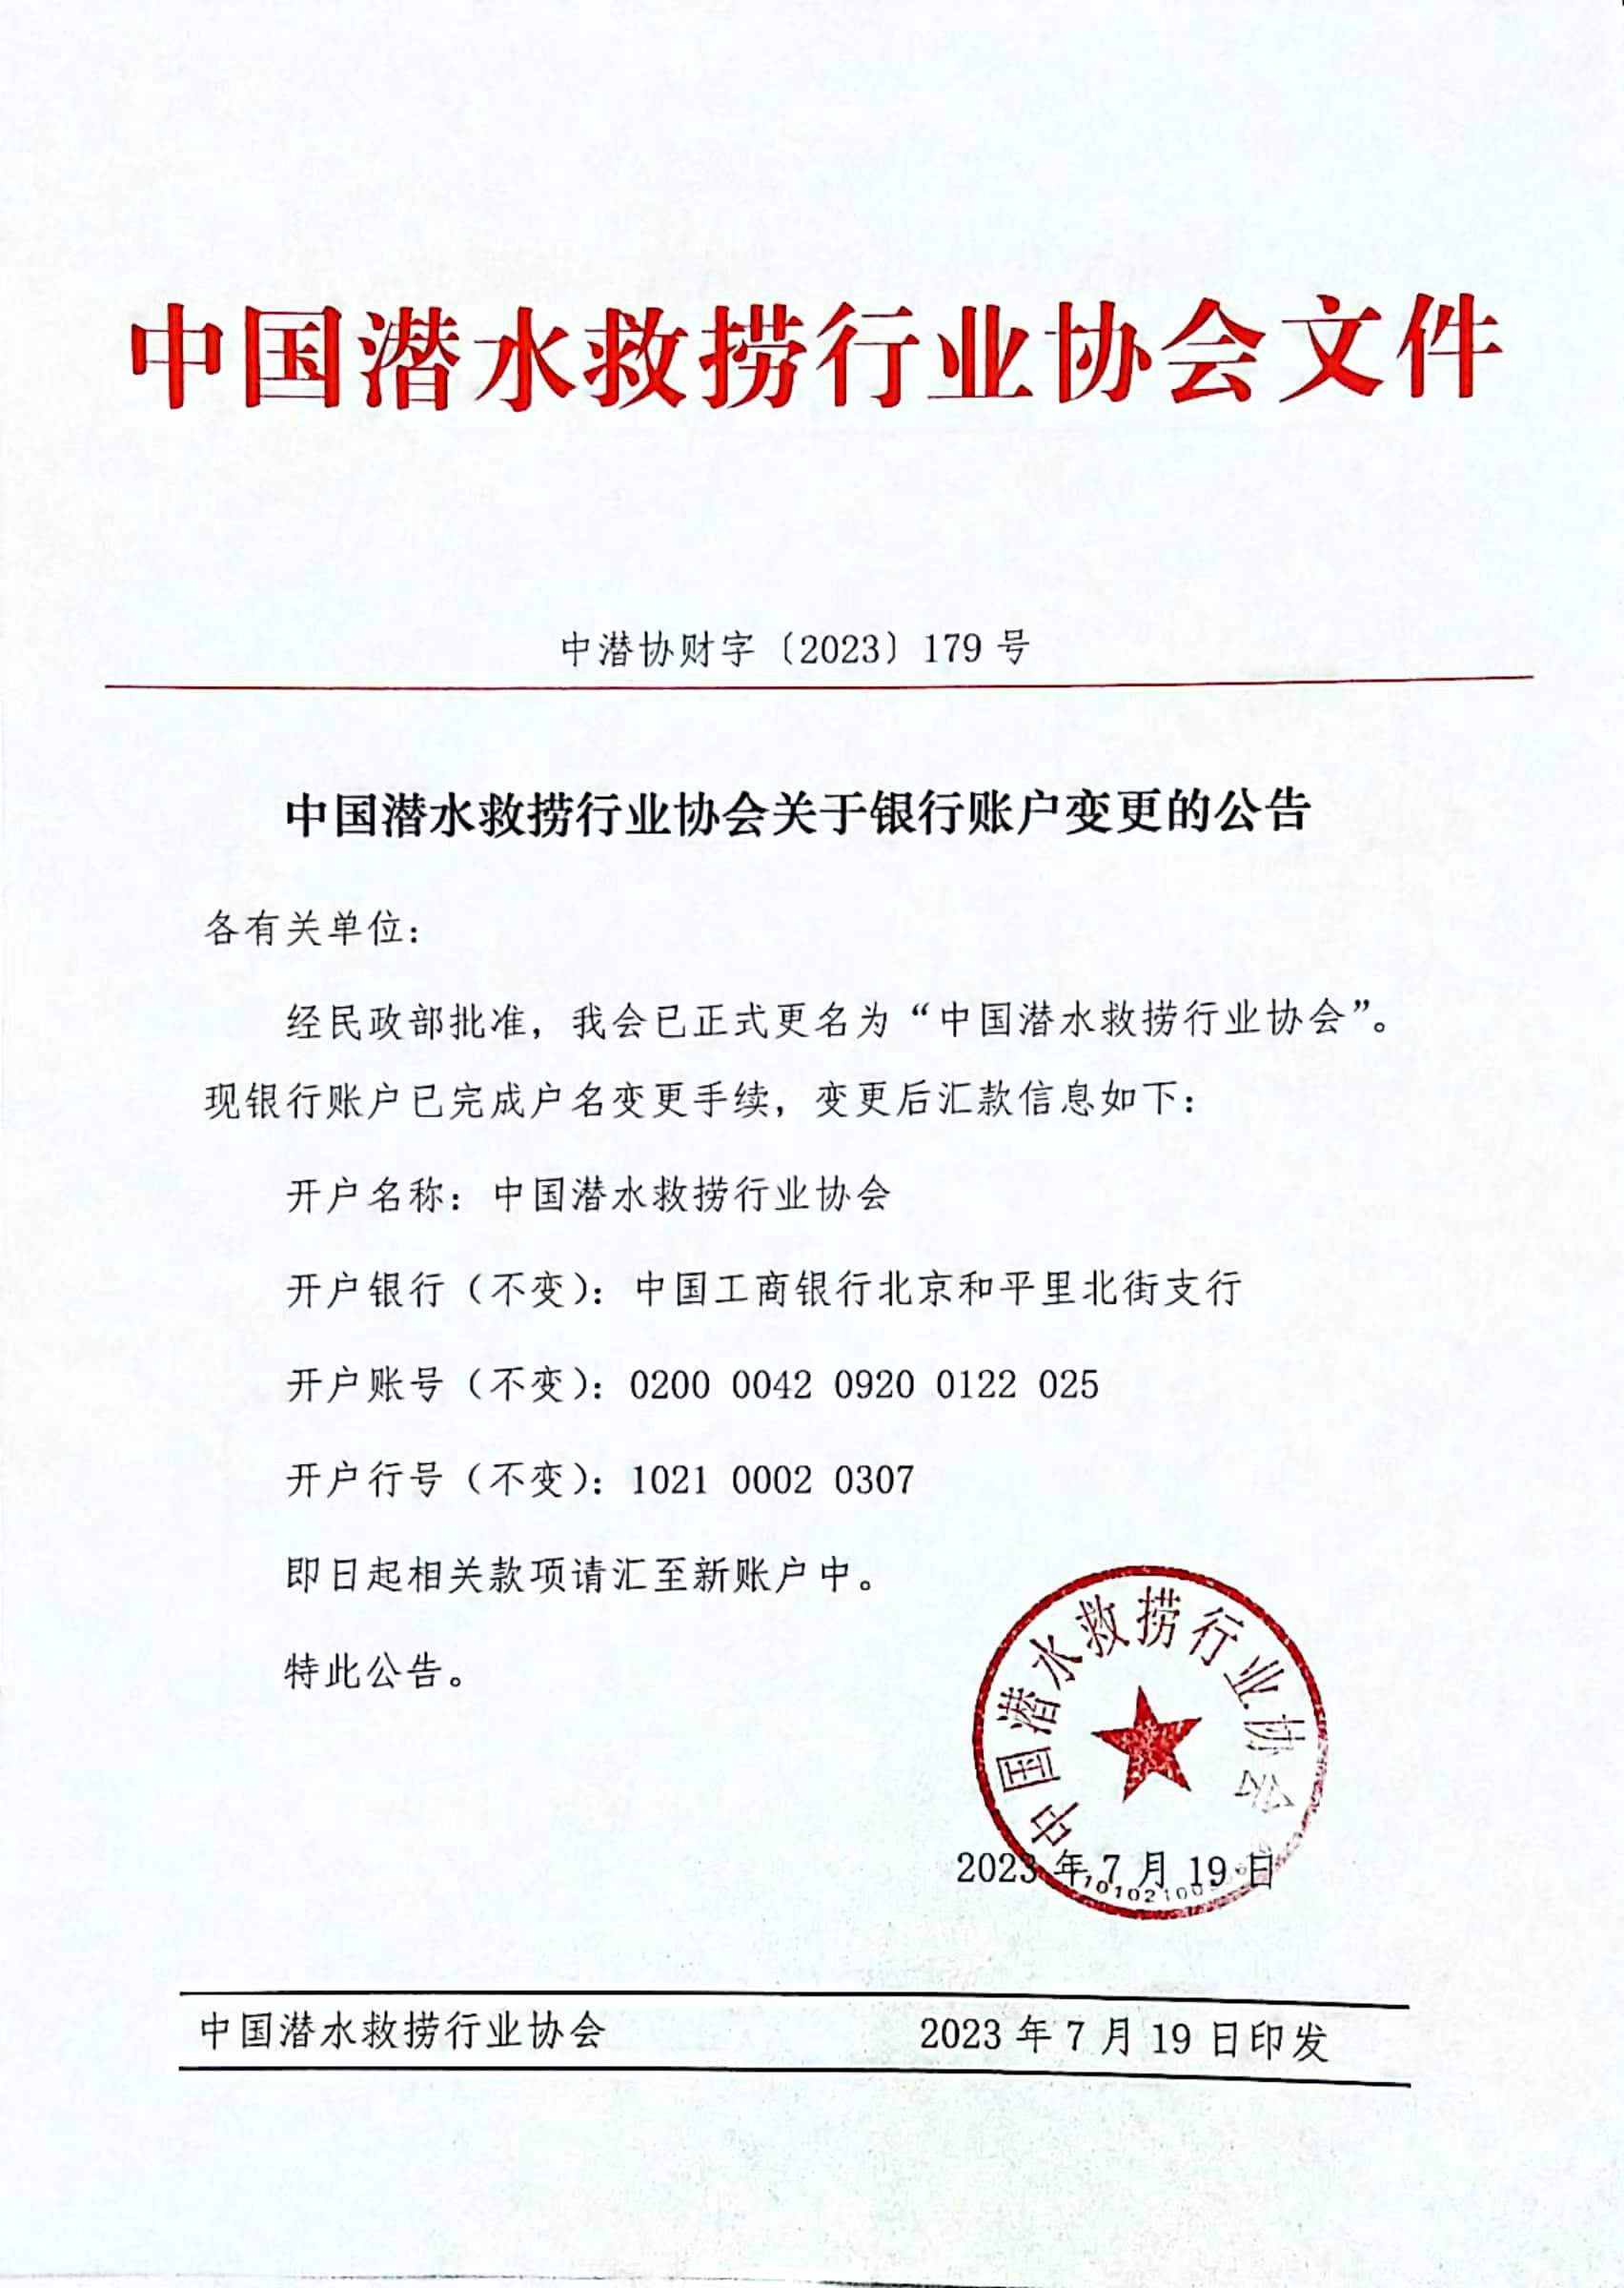 中国潜水救捞行业协会关于银行帐户变更的公告.jpg